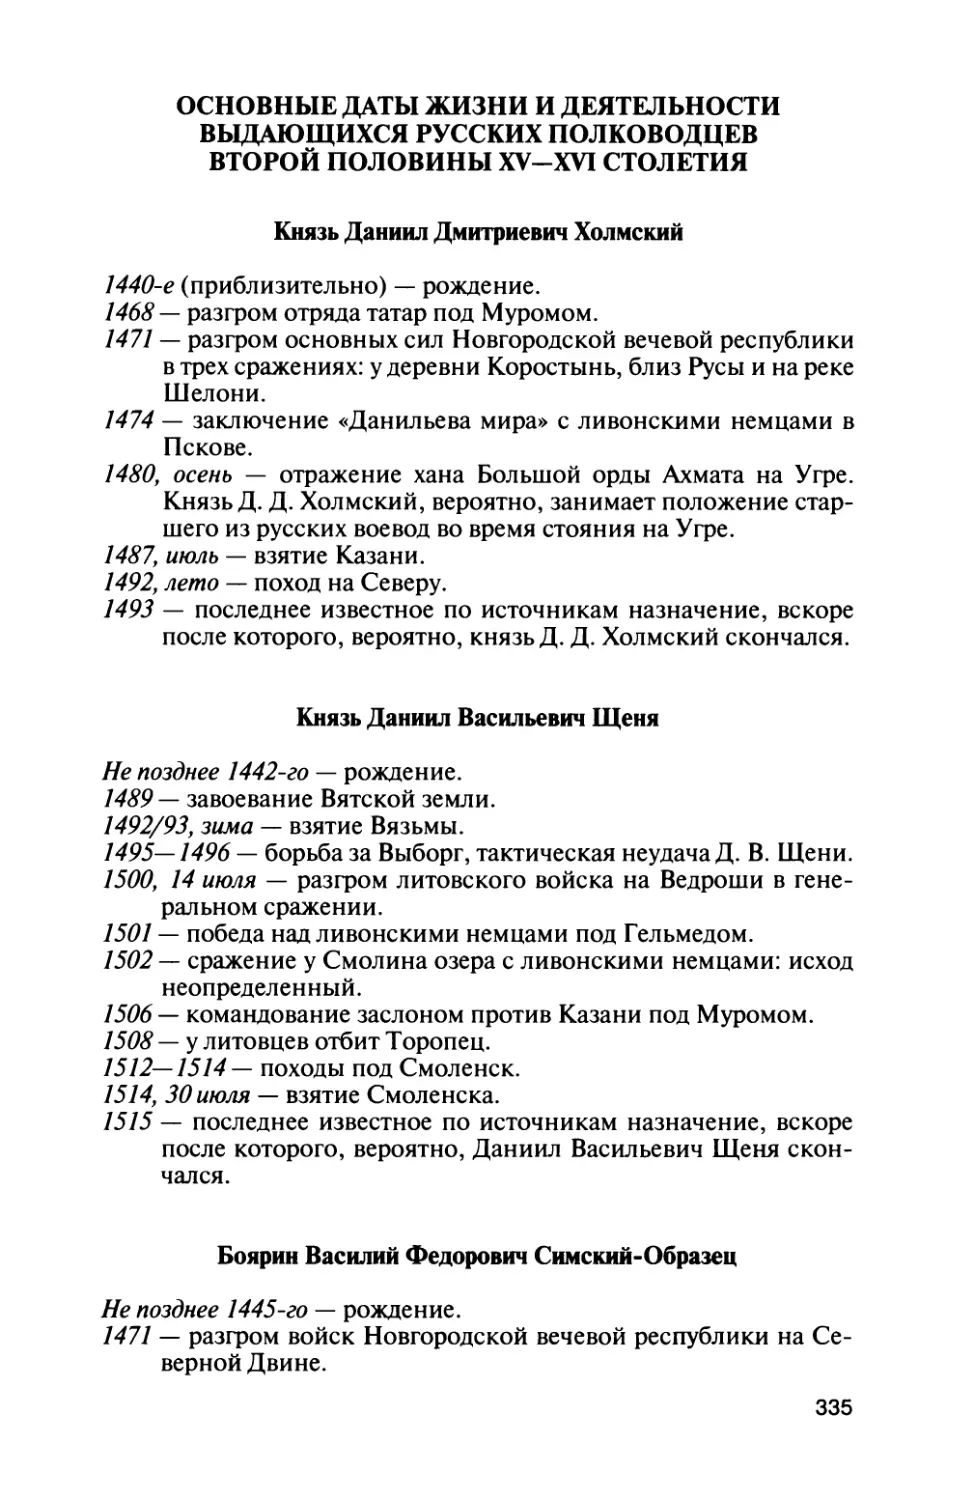 Основные даты жизни и деятельности выдающихся русских полководцев второй половины XV—XVI столетия